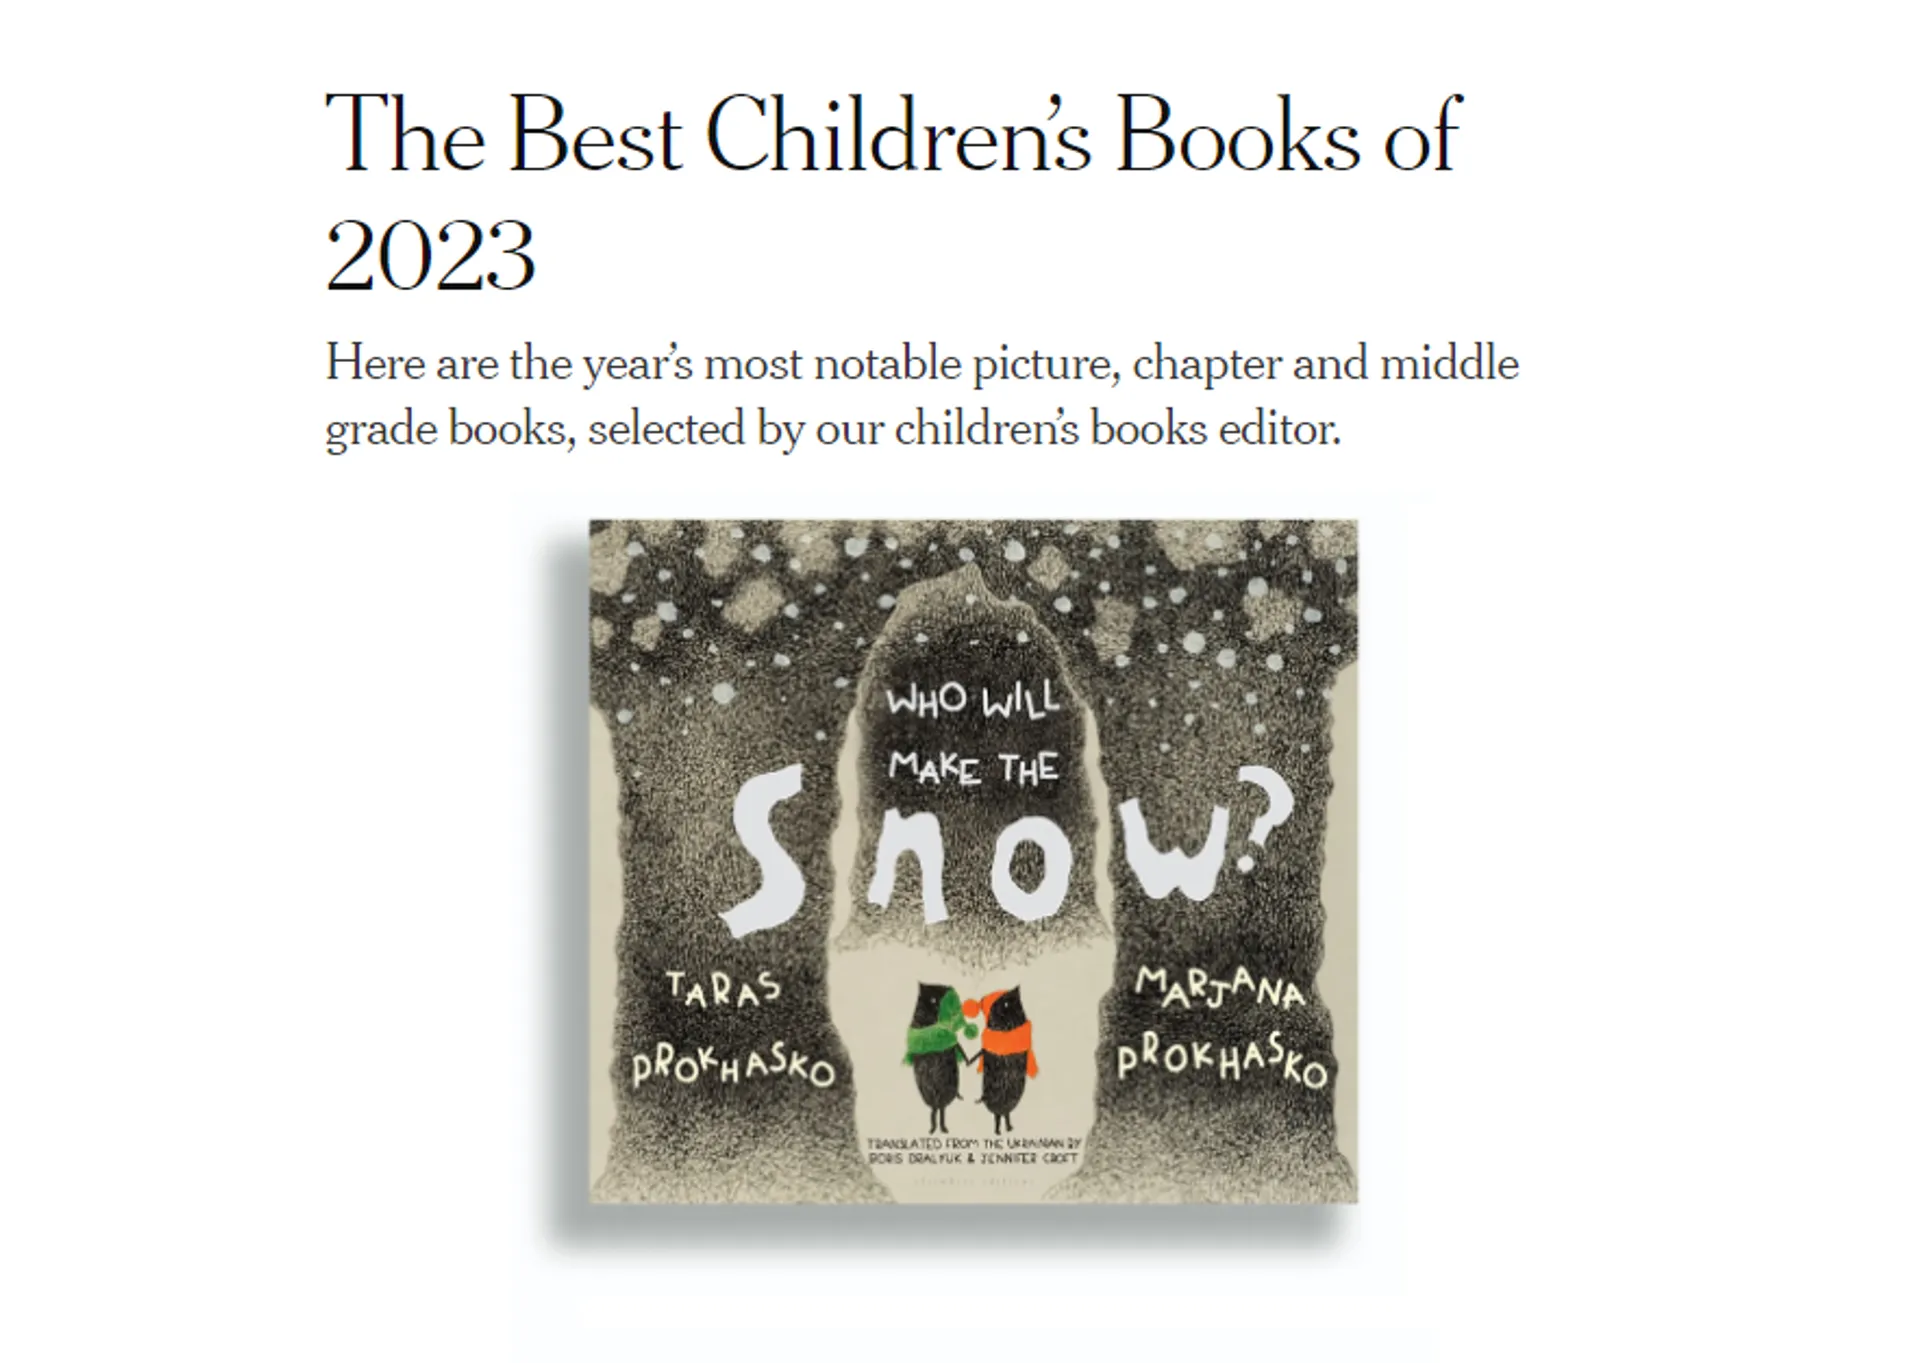 Книжка «Хто зробить сніг» Мар'яни Прохасько та Тараса Прохаська серед найкращий дитячих книжок 2023 «The New York Times»!